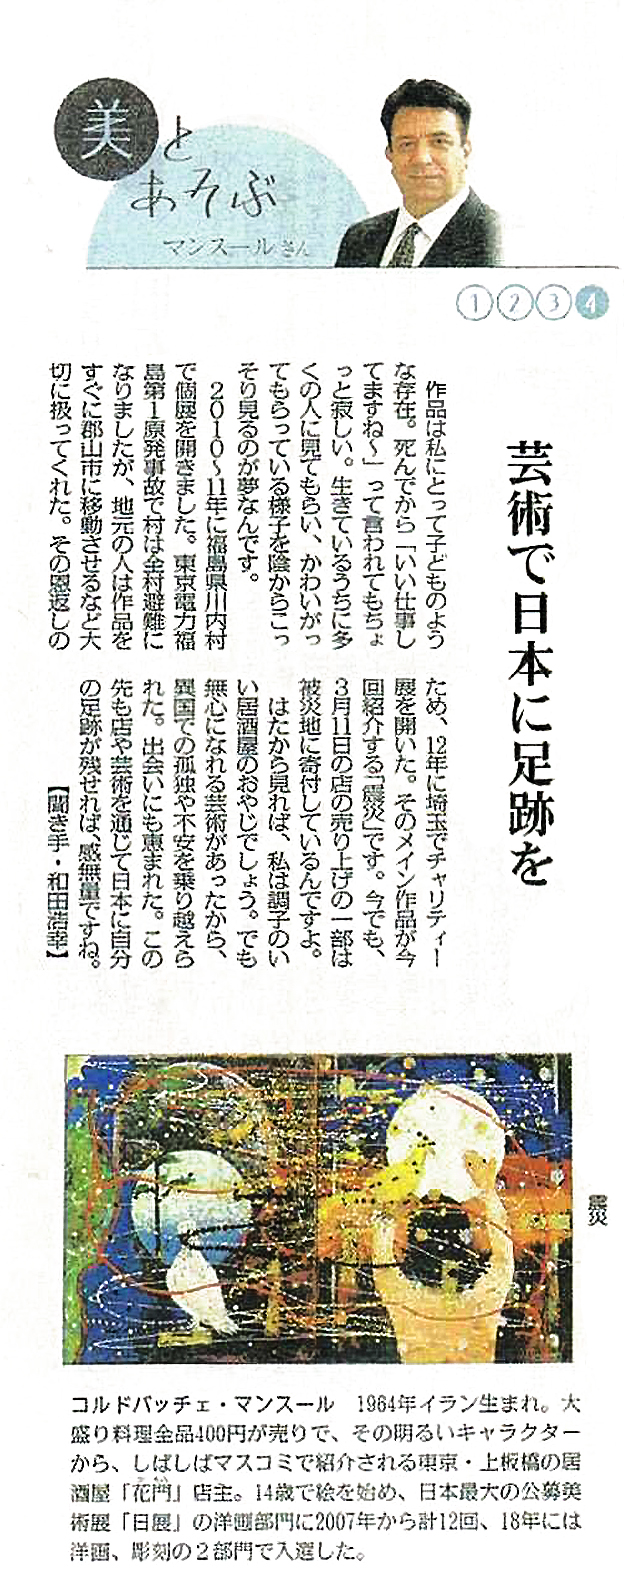 2020年10月12日の毎日新聞インタビュー記事。第4回。「芸術で日本に足跡を」